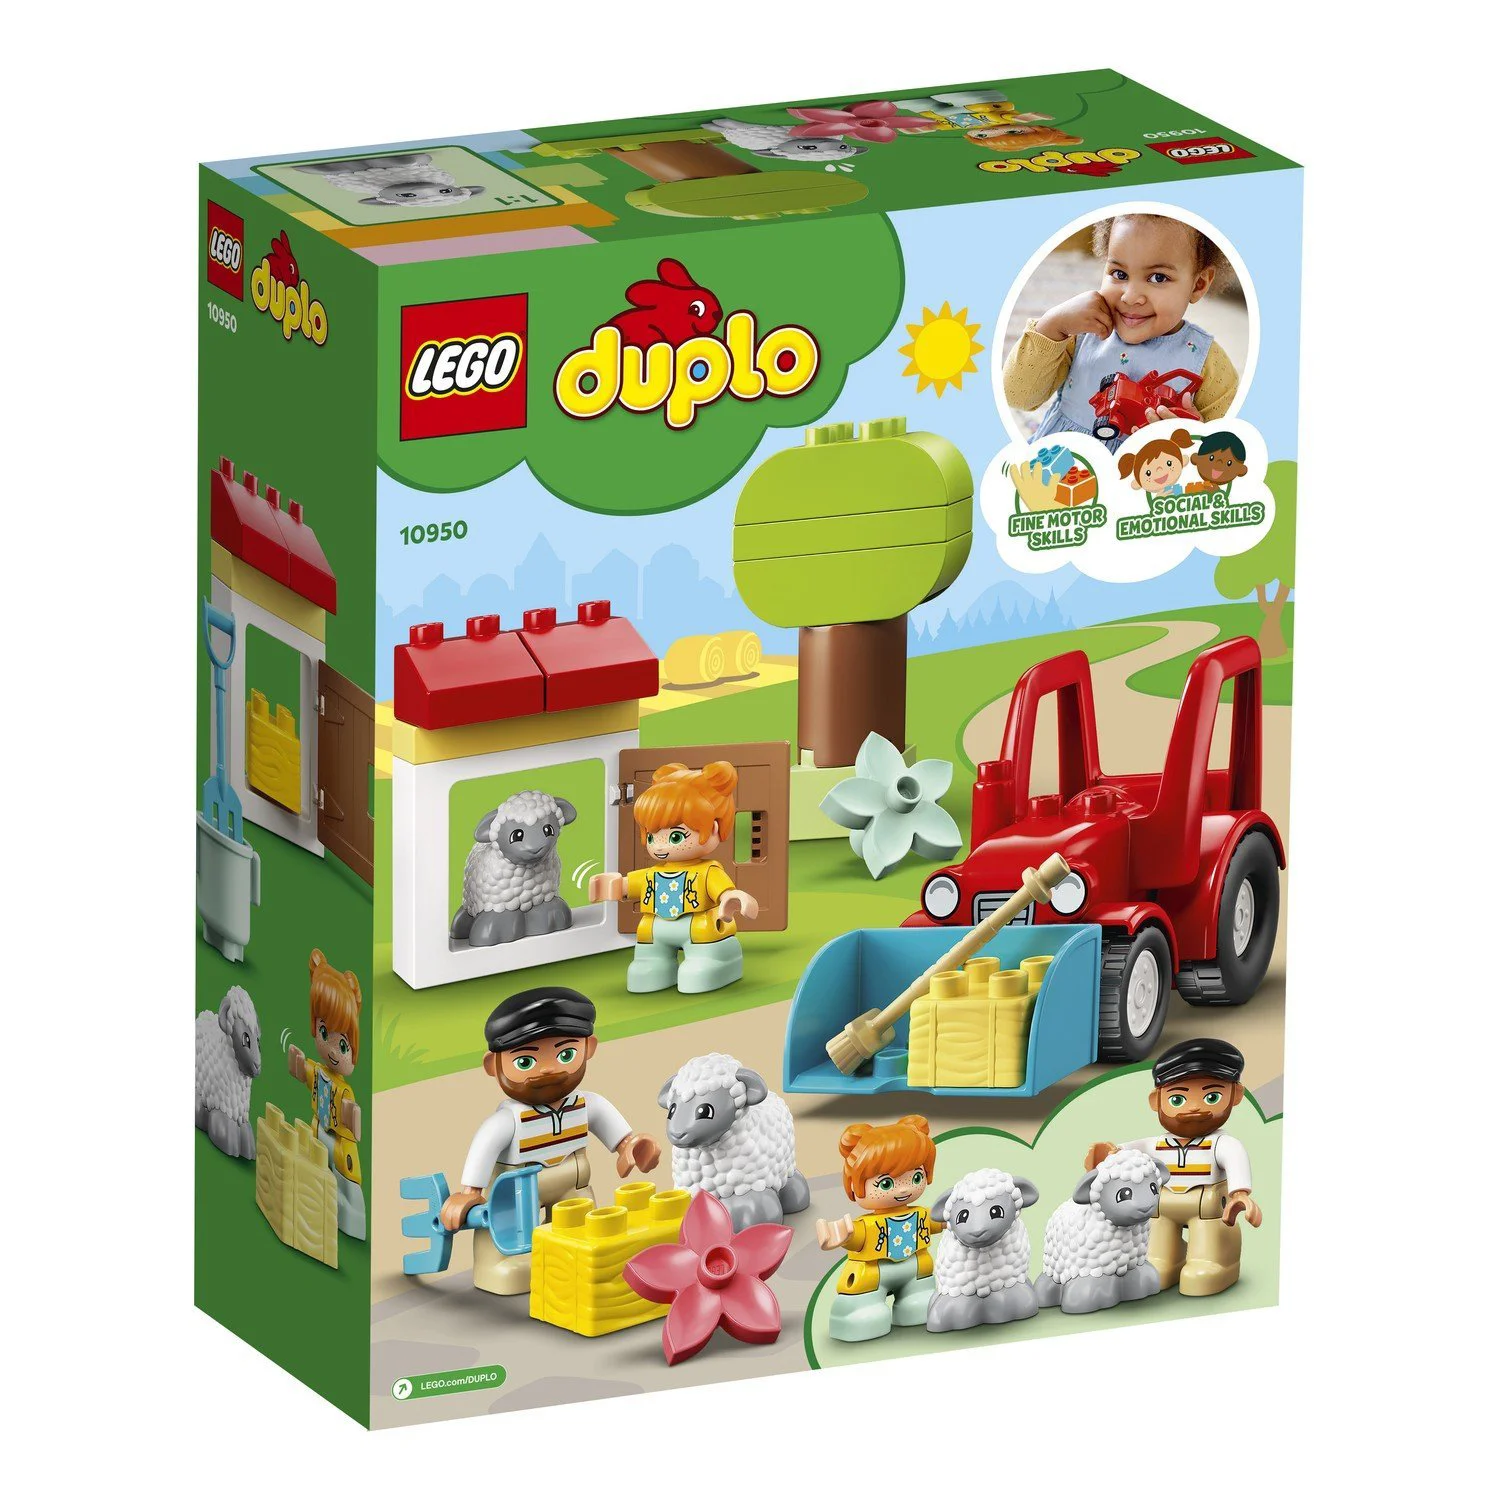 Lego Duplo Town Фермерский трактор и животные